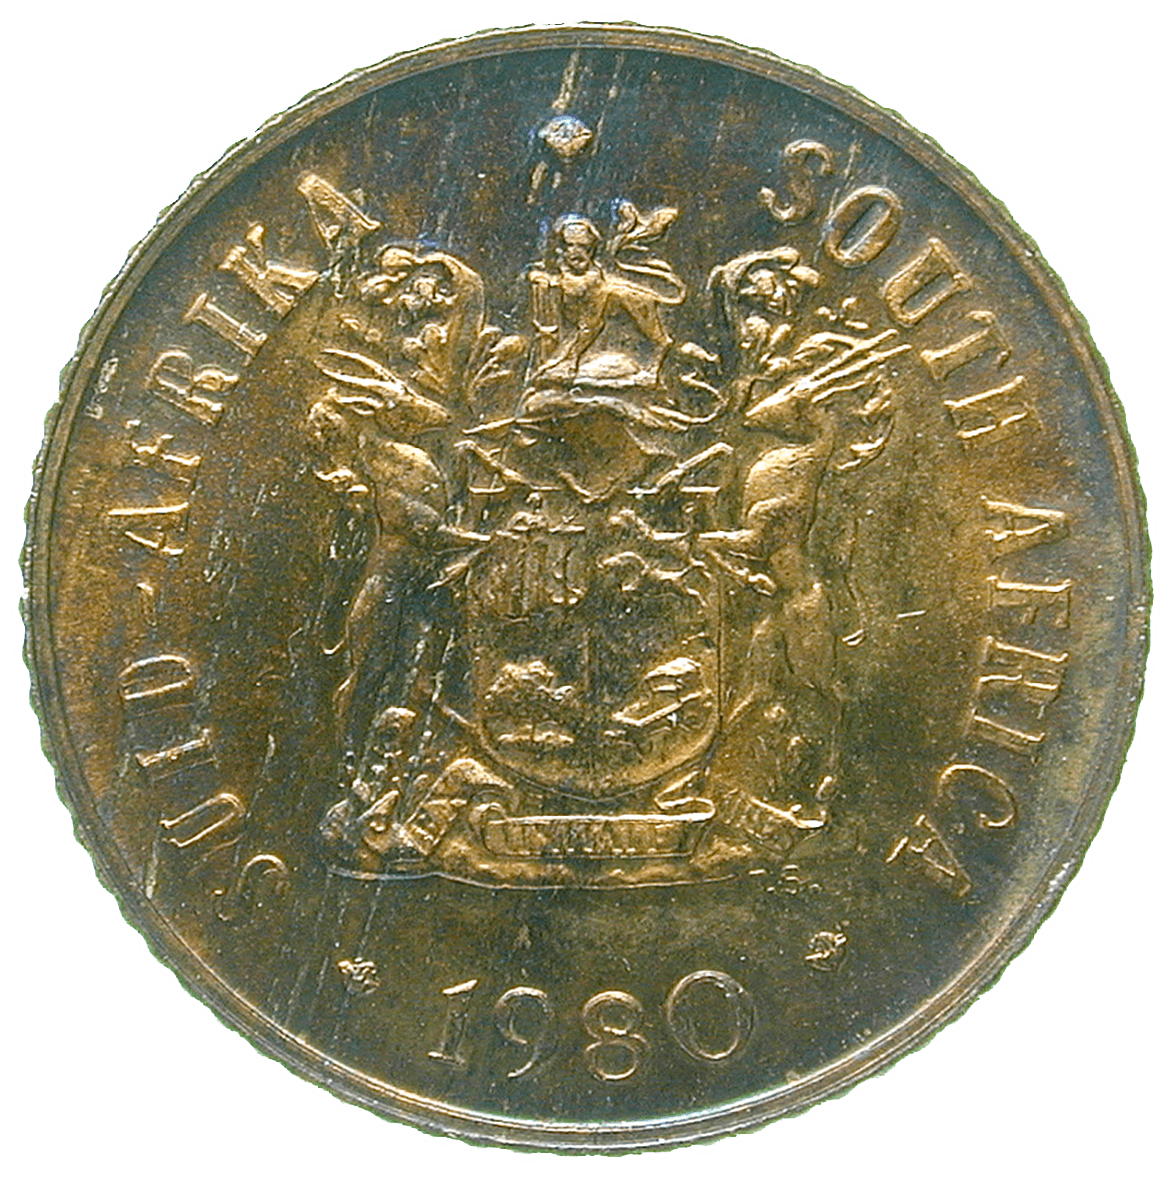 Republik Südafrika, 1 Cent 1980 (obverse)